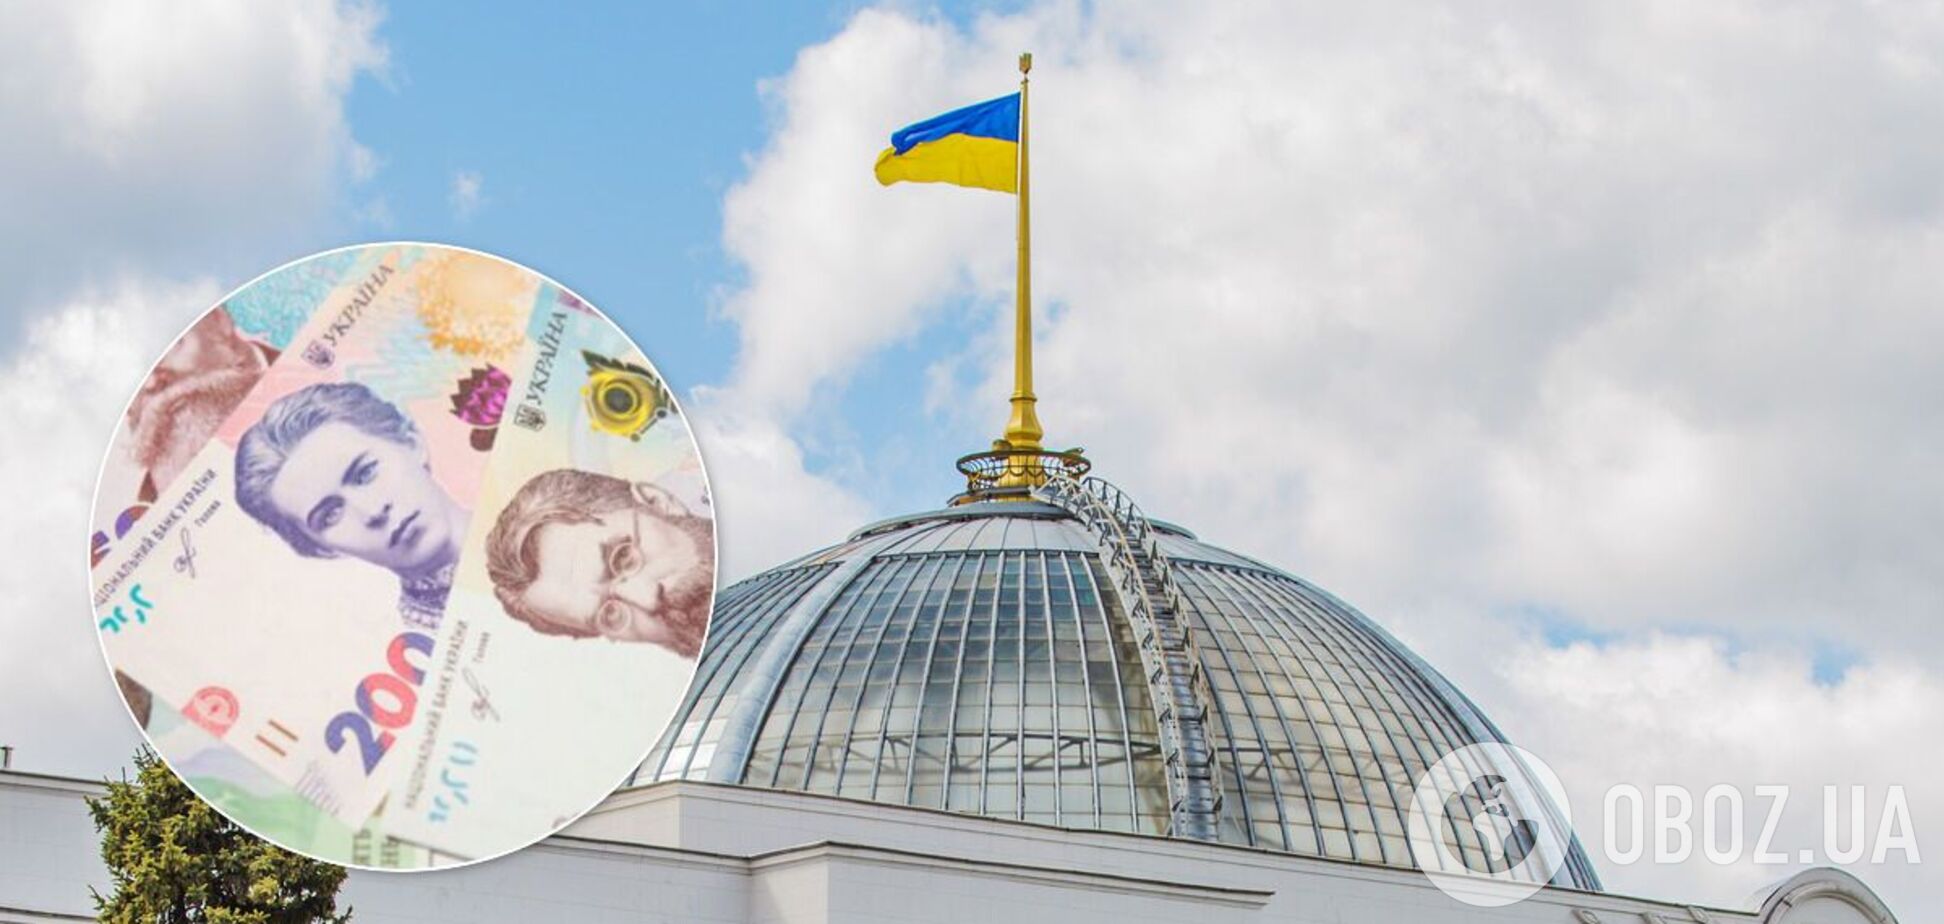 Еще почти 700 млн грн на содержание парламентских партий Украины. Промолчим?